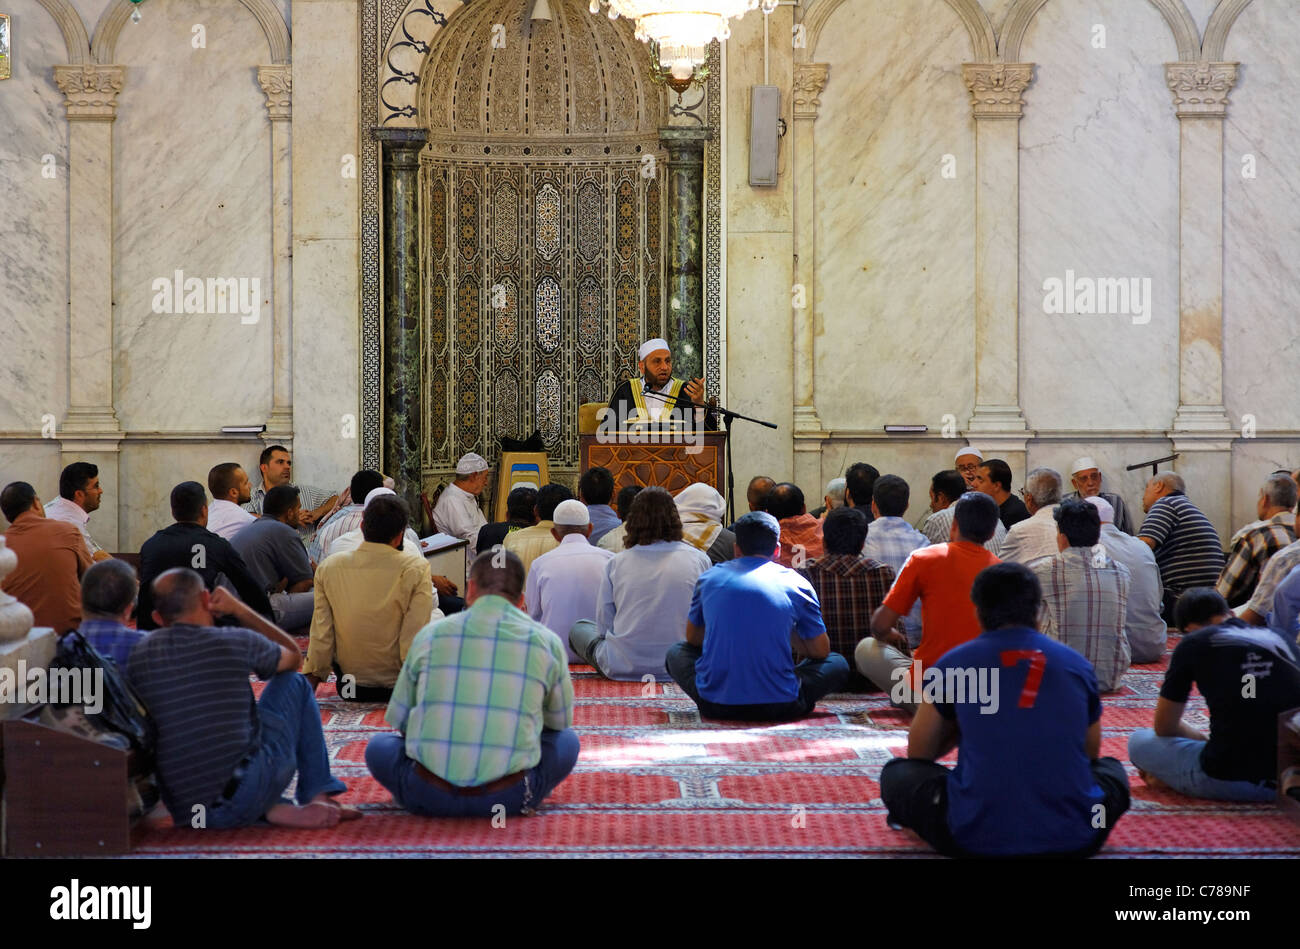 Sermon inside the Umayyad Mosque, Damascus, Syria Stock Photo